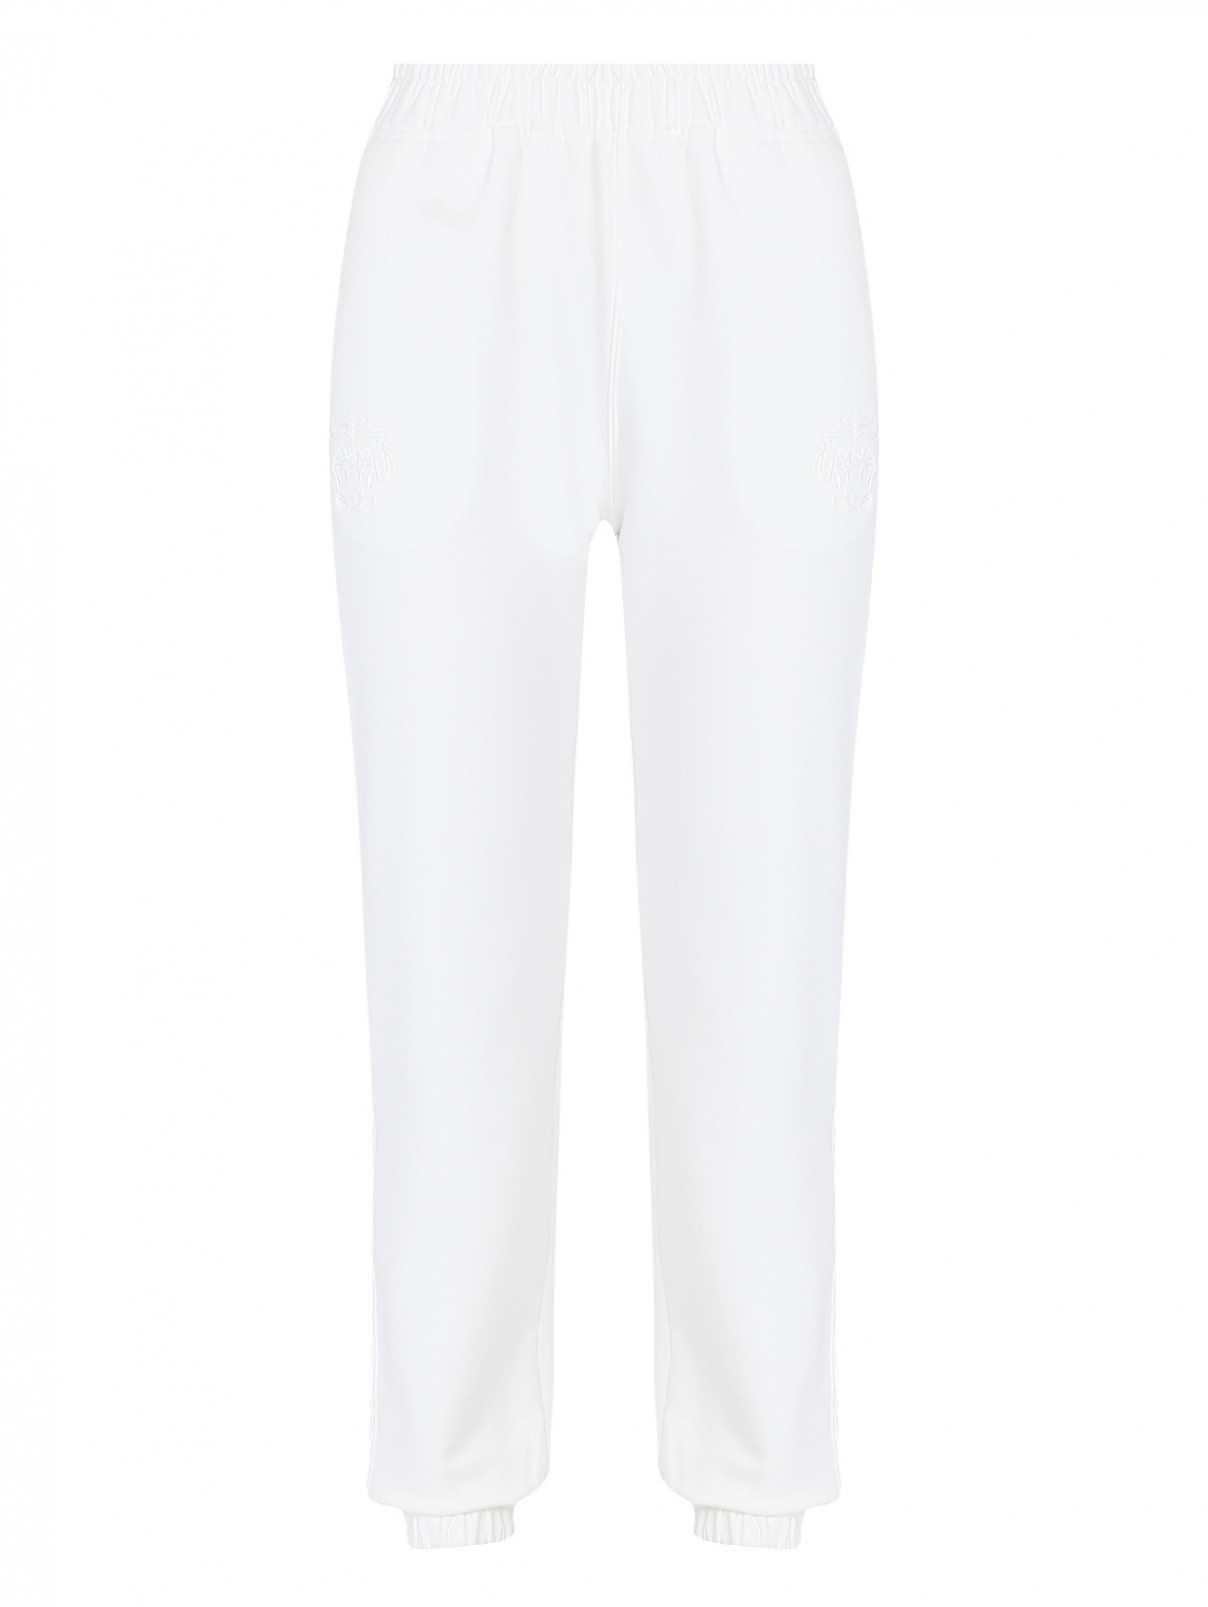 Трикотажные брюки из хлопка на резинке с карманами Ermanno Scervino  –  Общий вид  – Цвет:  Белый